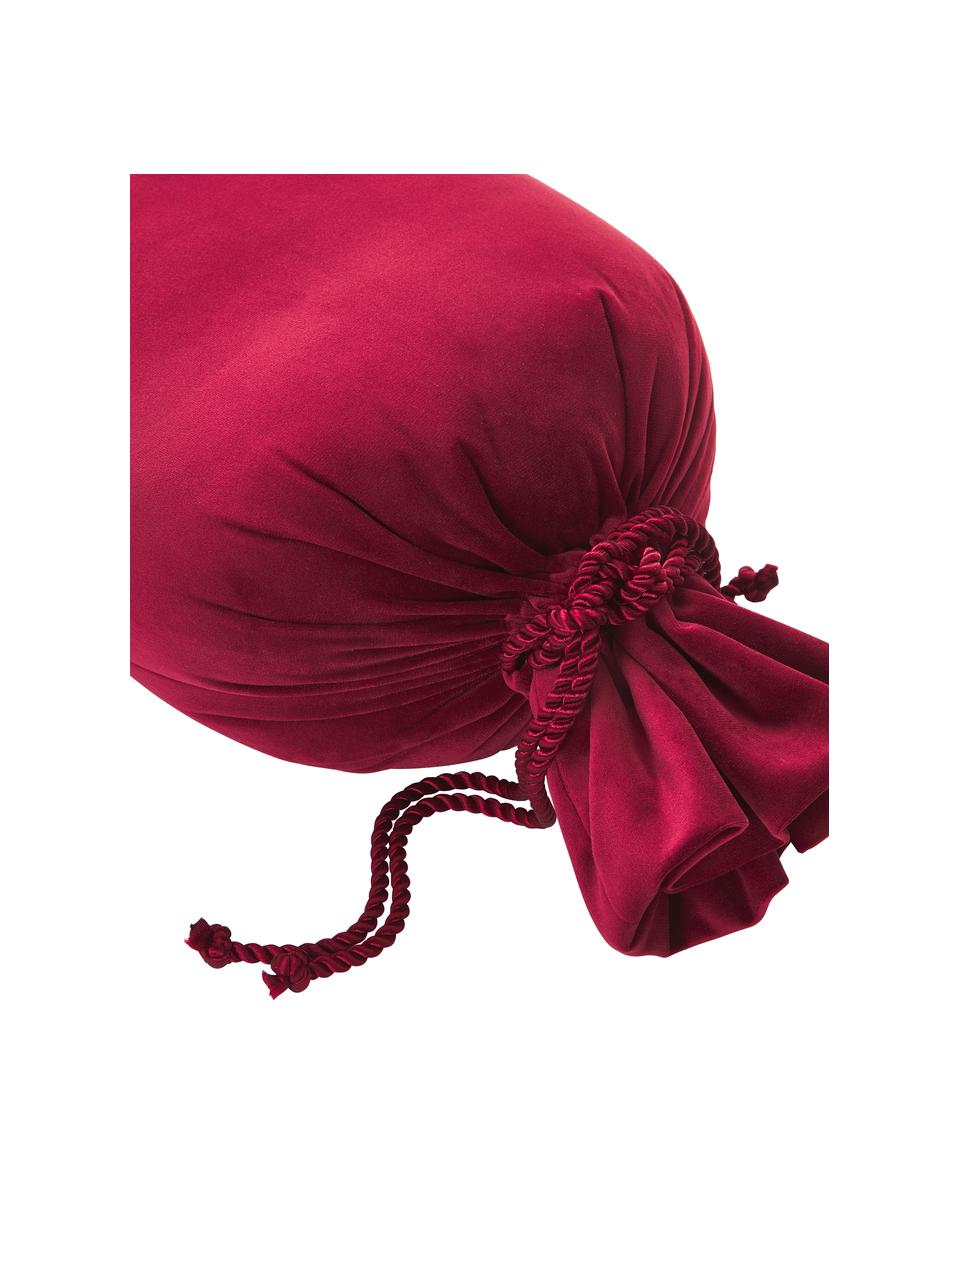 Coussin en velours rouge foncé en forme de bonbon Pandora, Velours rouge, Ø 30 cm